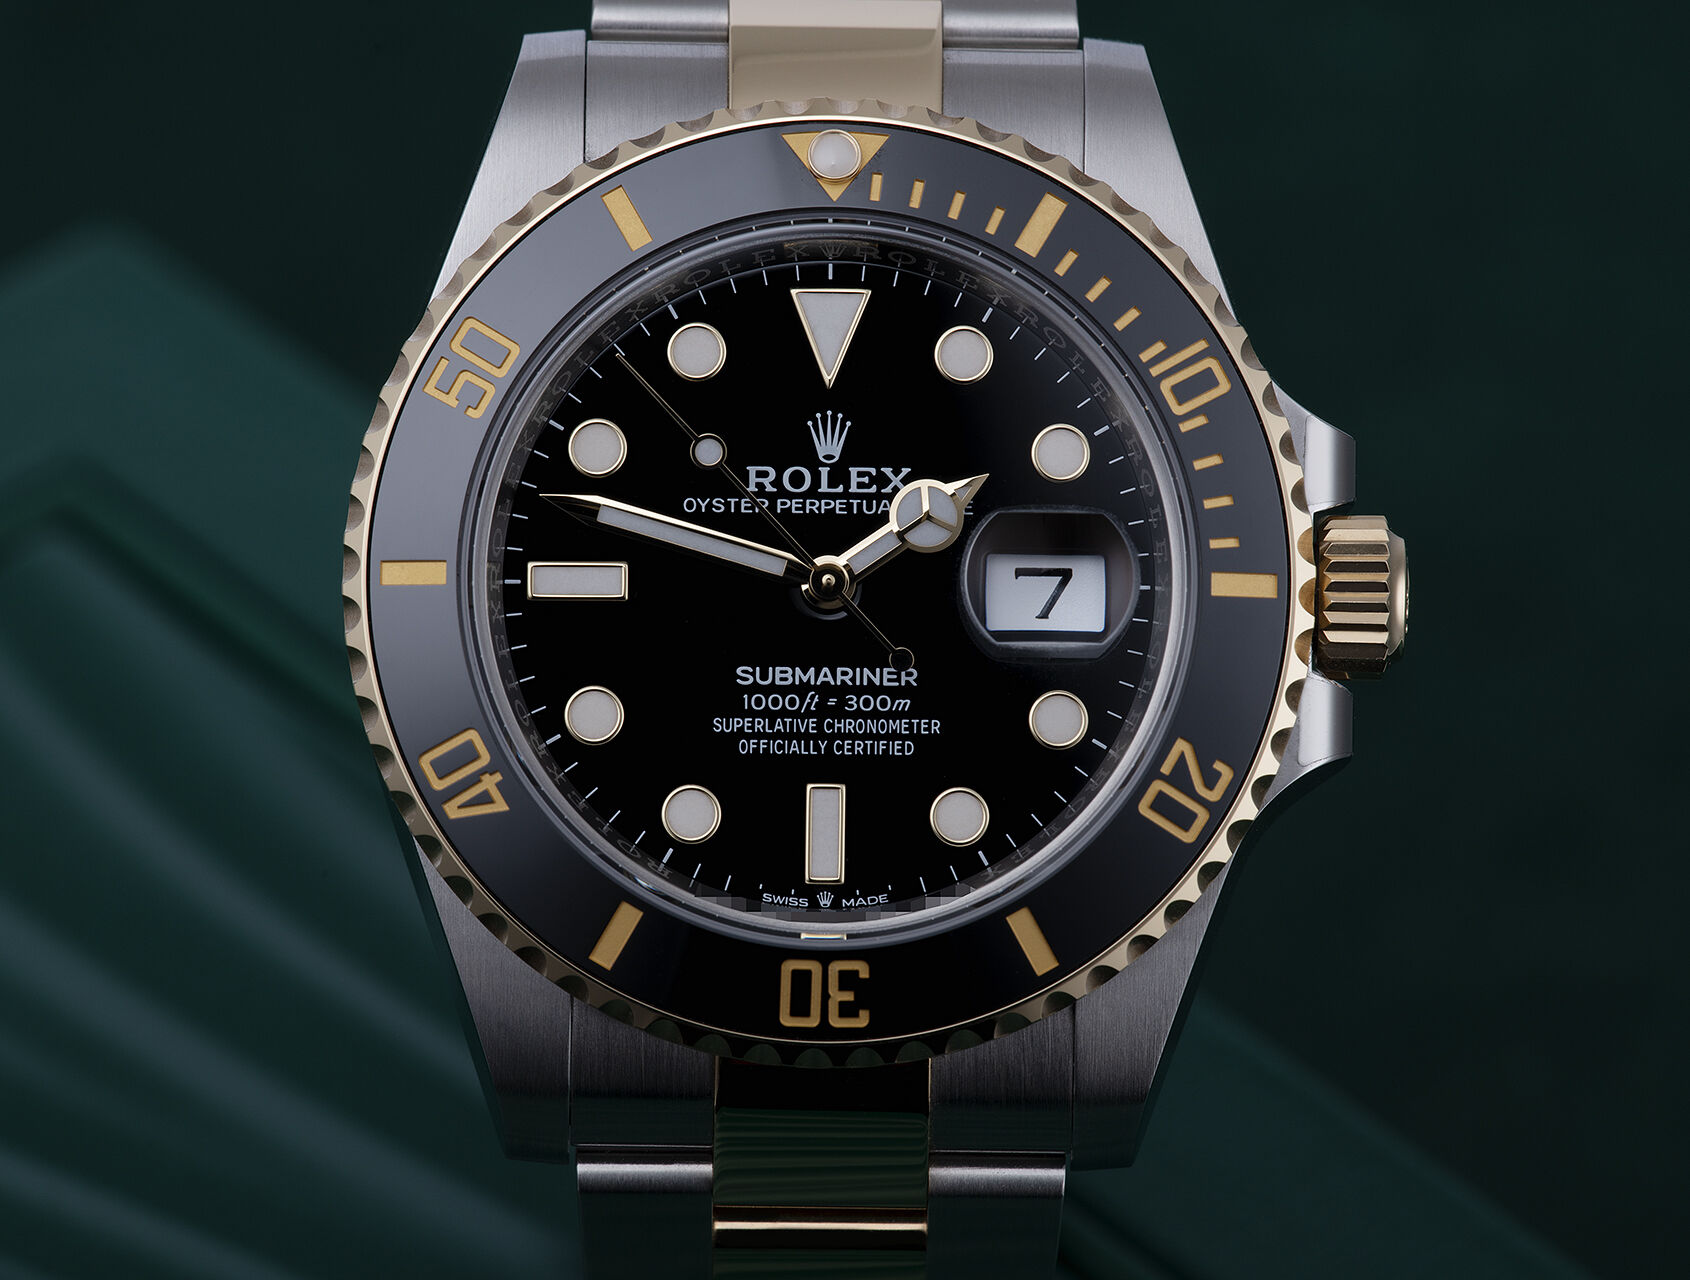 ref 126613LN | 126613LN - Gold & Steel | Rolex Submariner Date